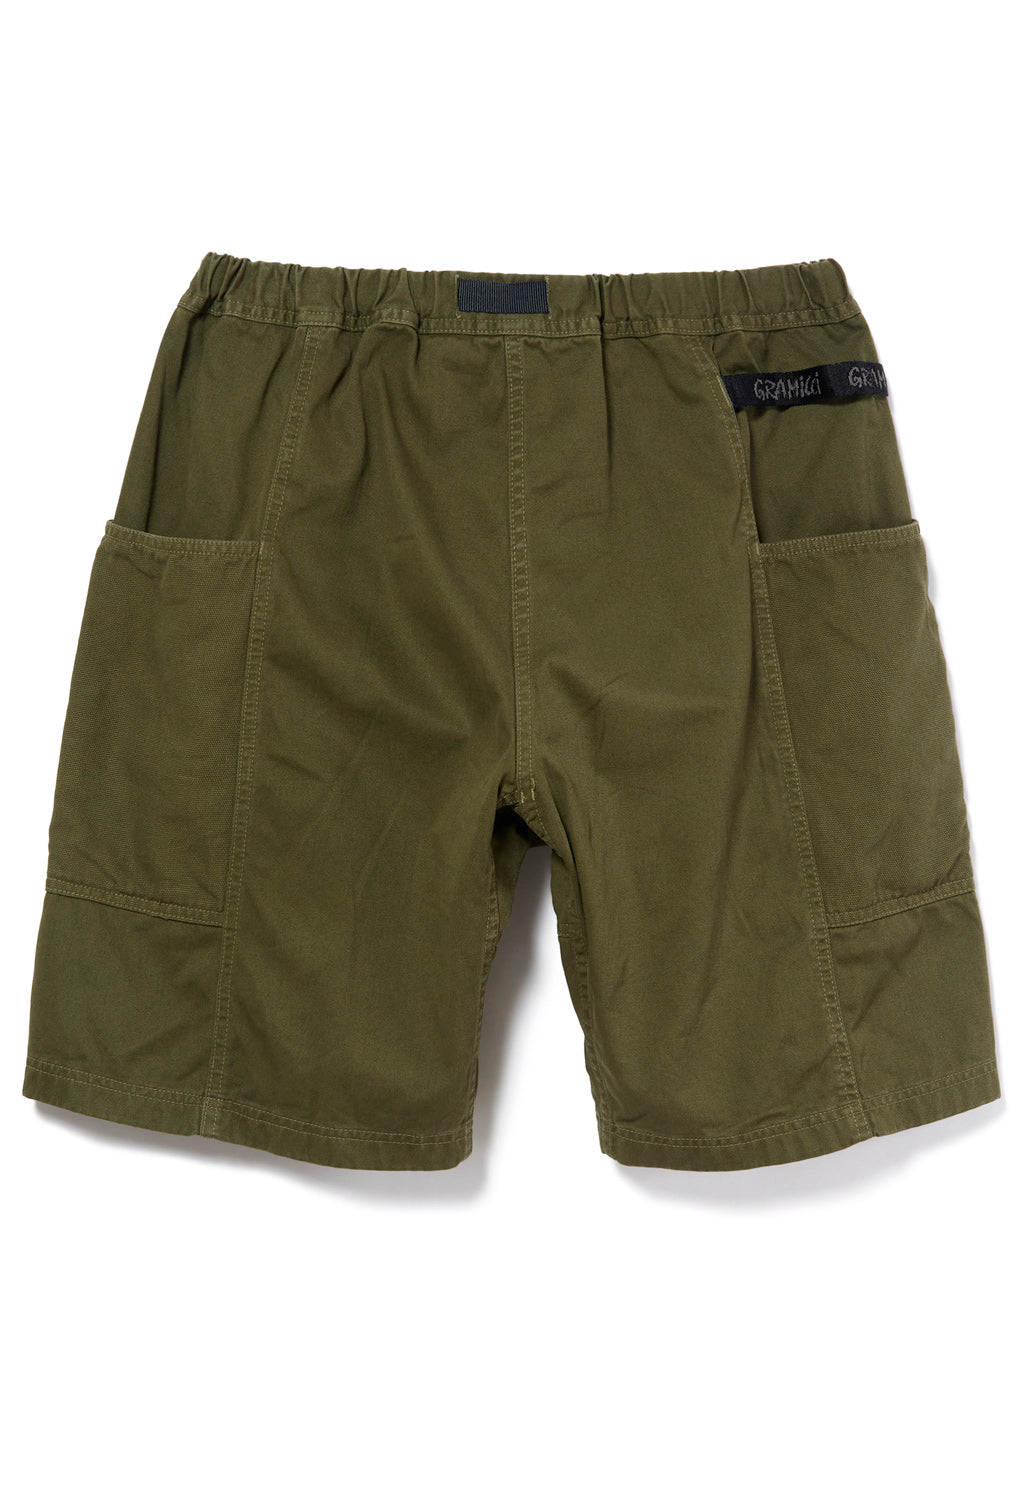 Gramicci Men's Gadget Shorts - Olive